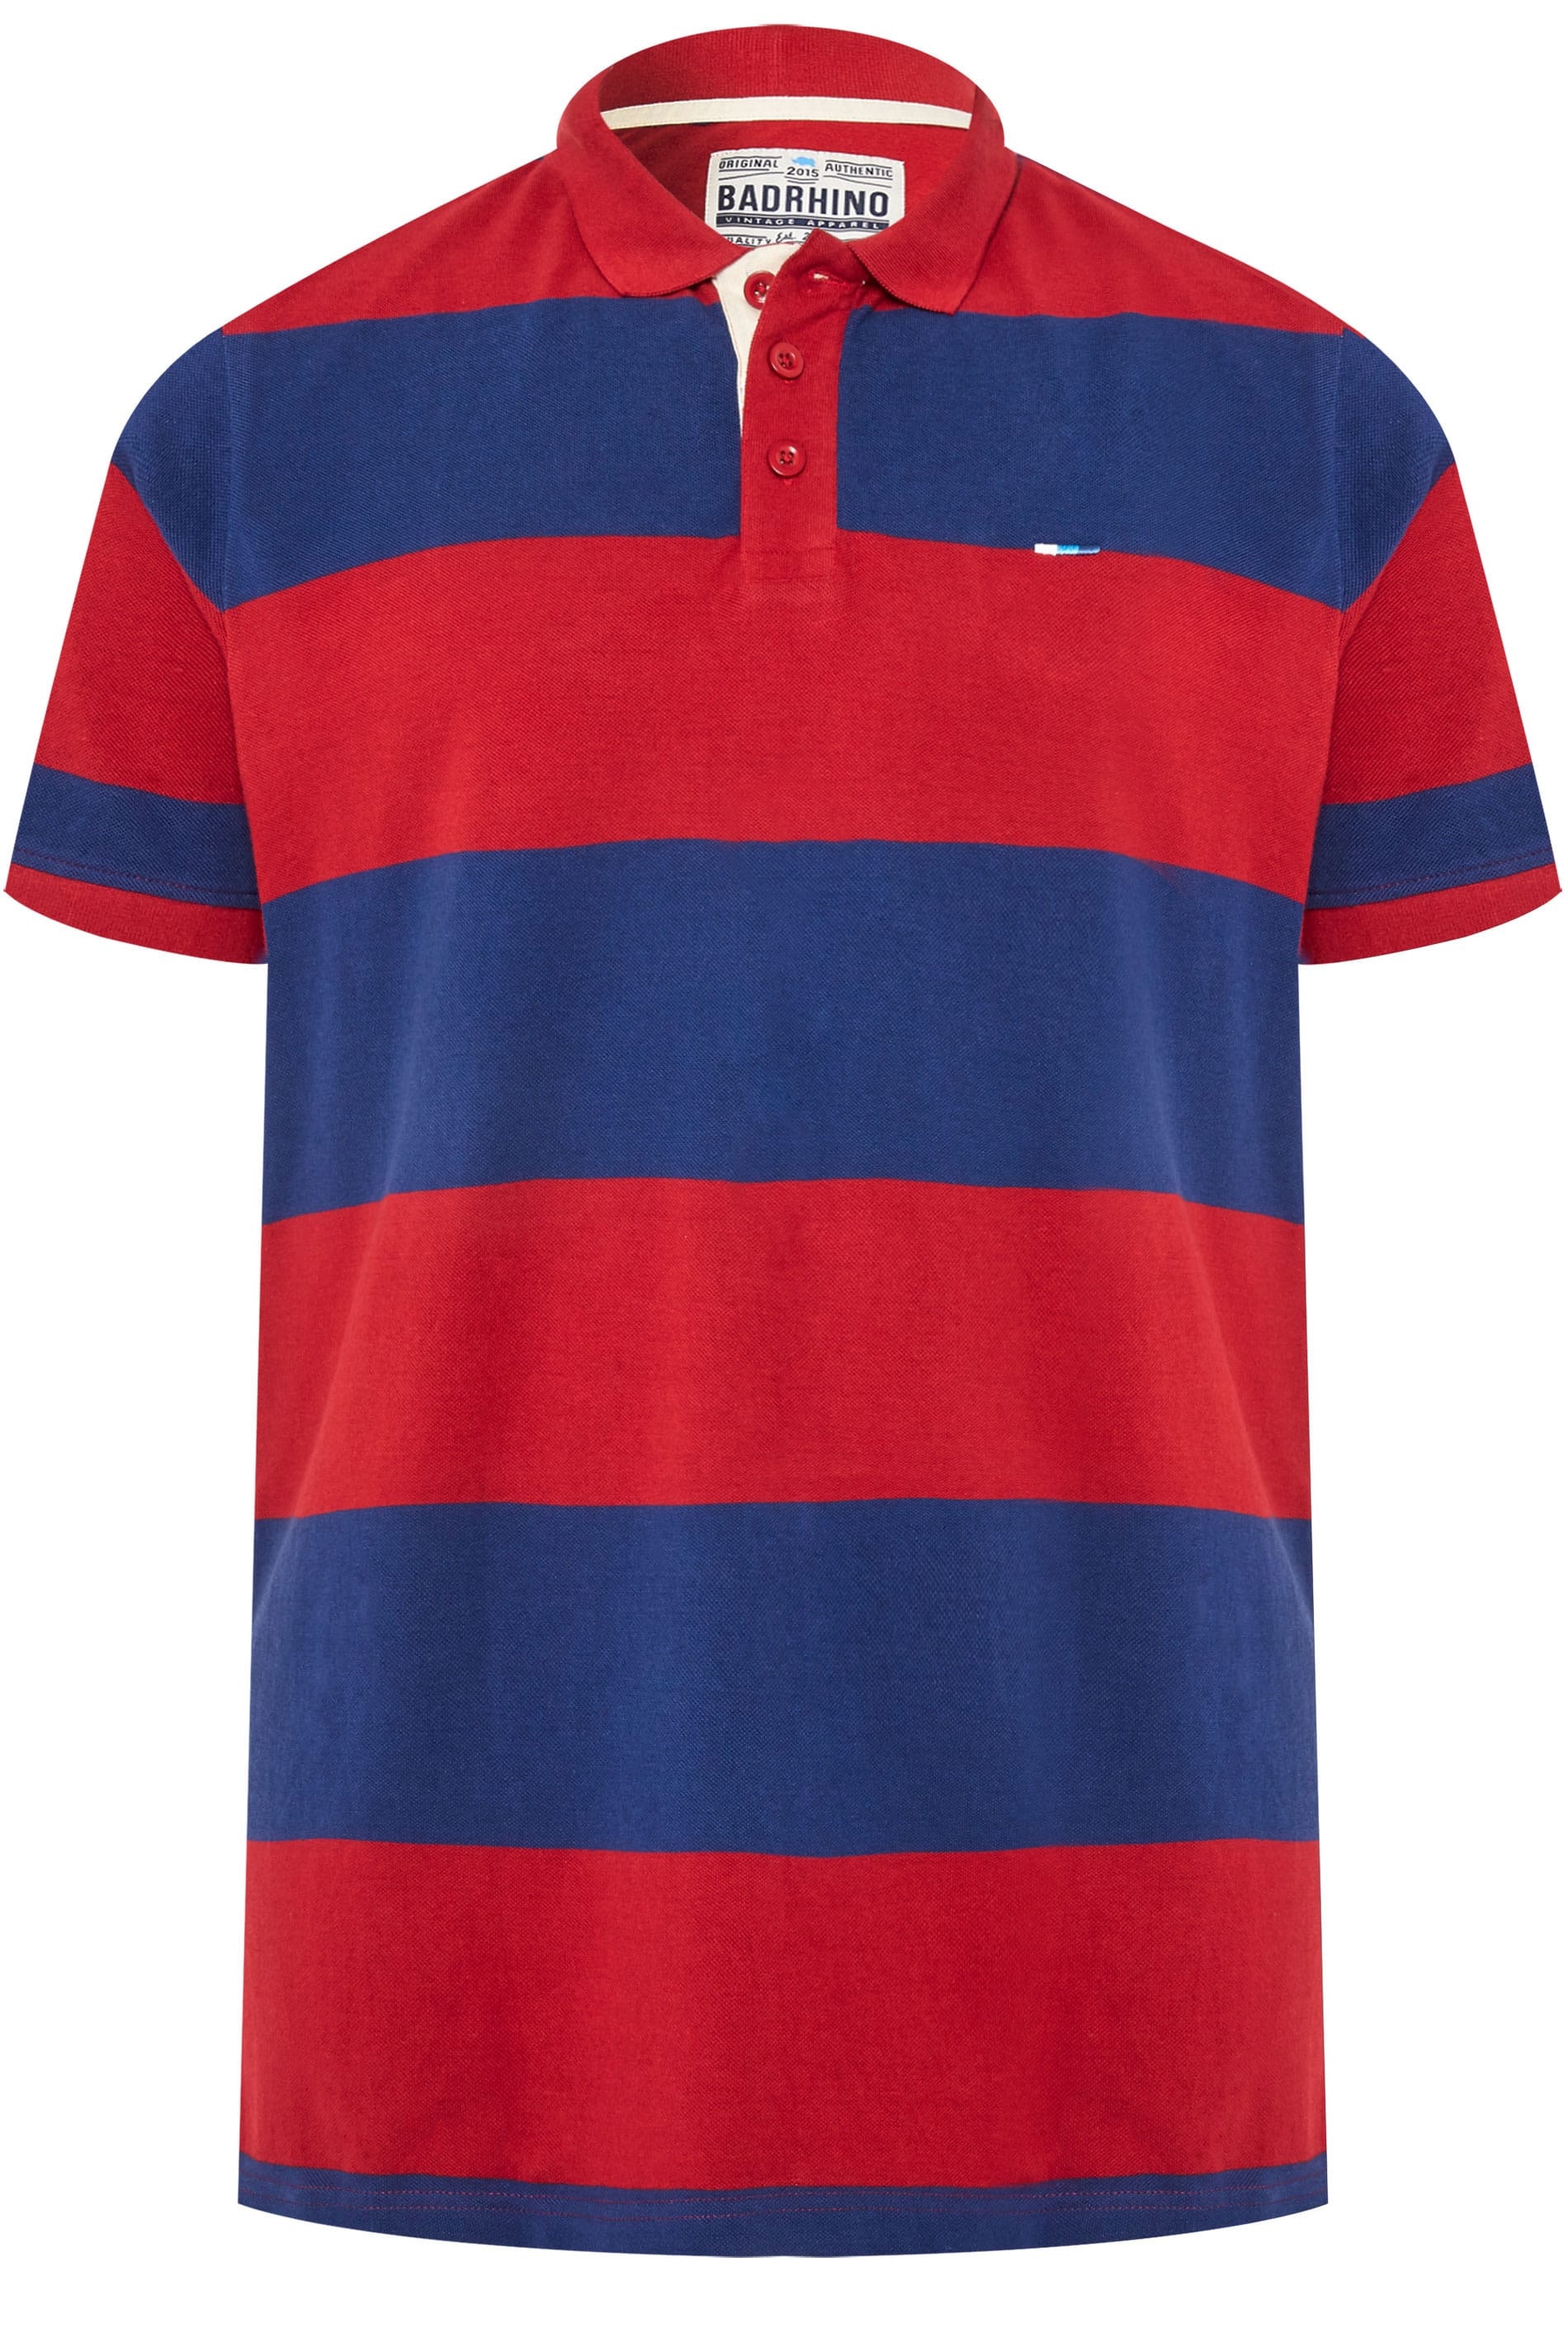 BadRhino Red & Blue Striped Polo Shirt | Sizes Medium-8XL | BadRhino